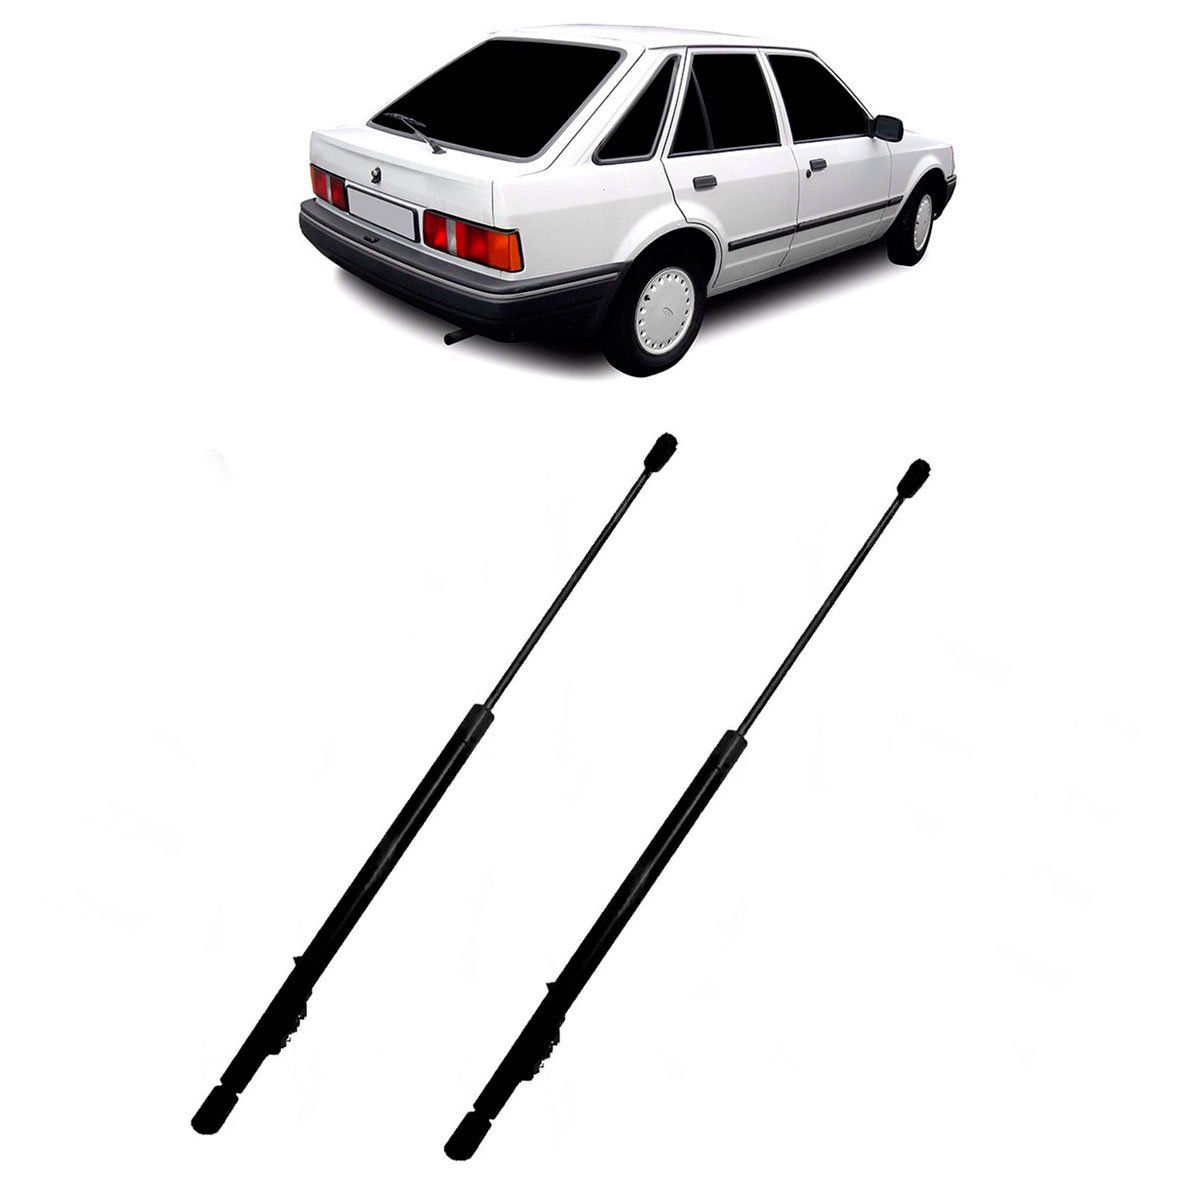 Par Amortecedores Perfect Porta Malas Com Limpador Ford Escort XR3 1984 até 1992 - APM61261